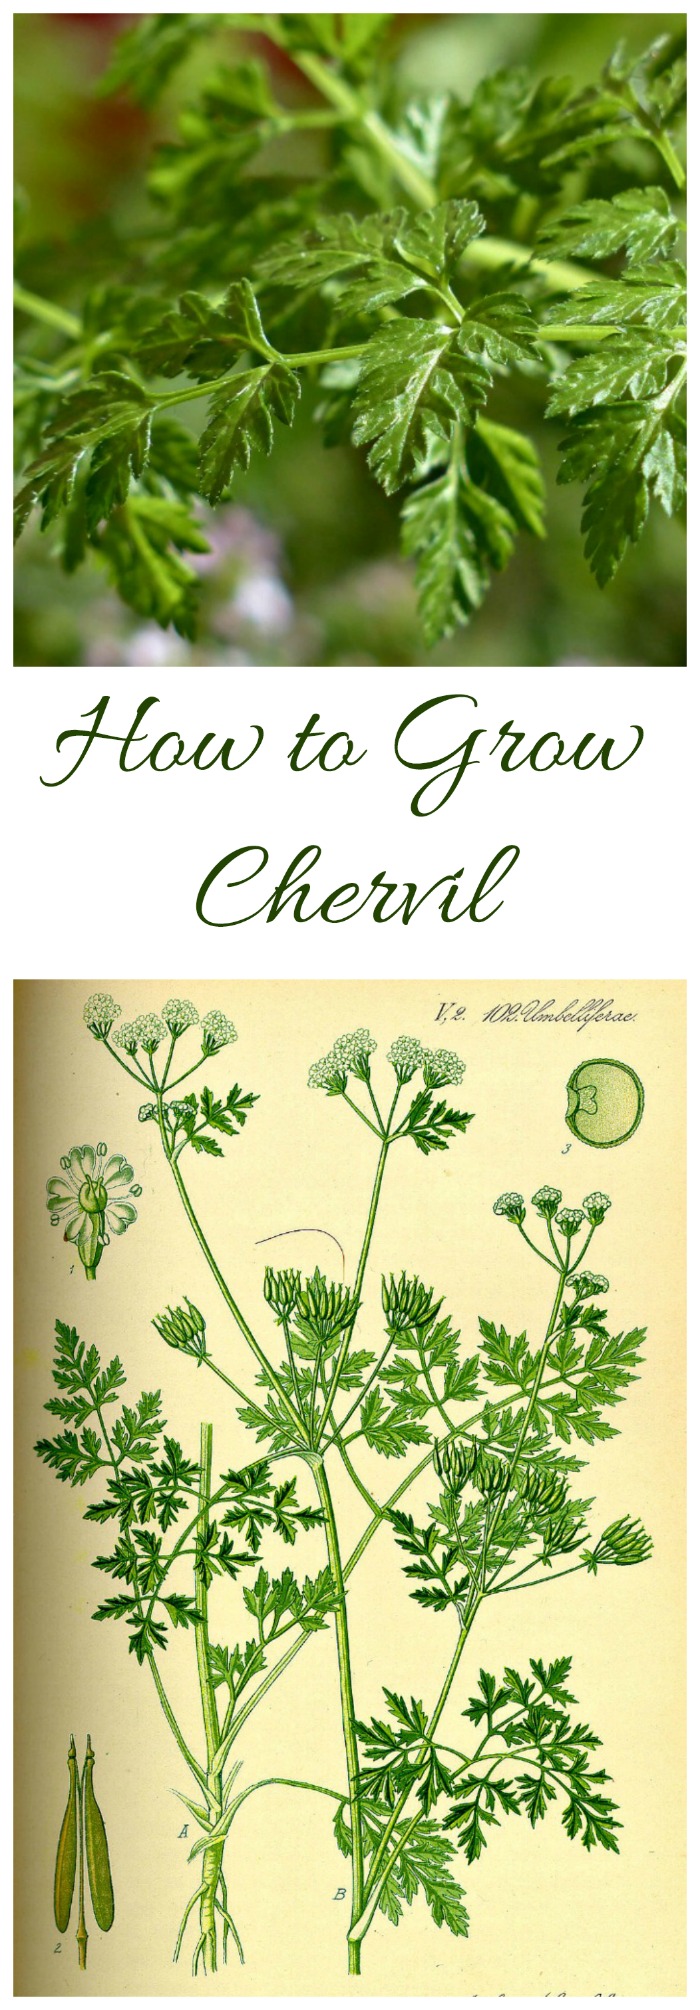 Chervil ургах - Chervil өвсийг хэрхэн ургуулах вэ (мөн зарим орлуулагч!)